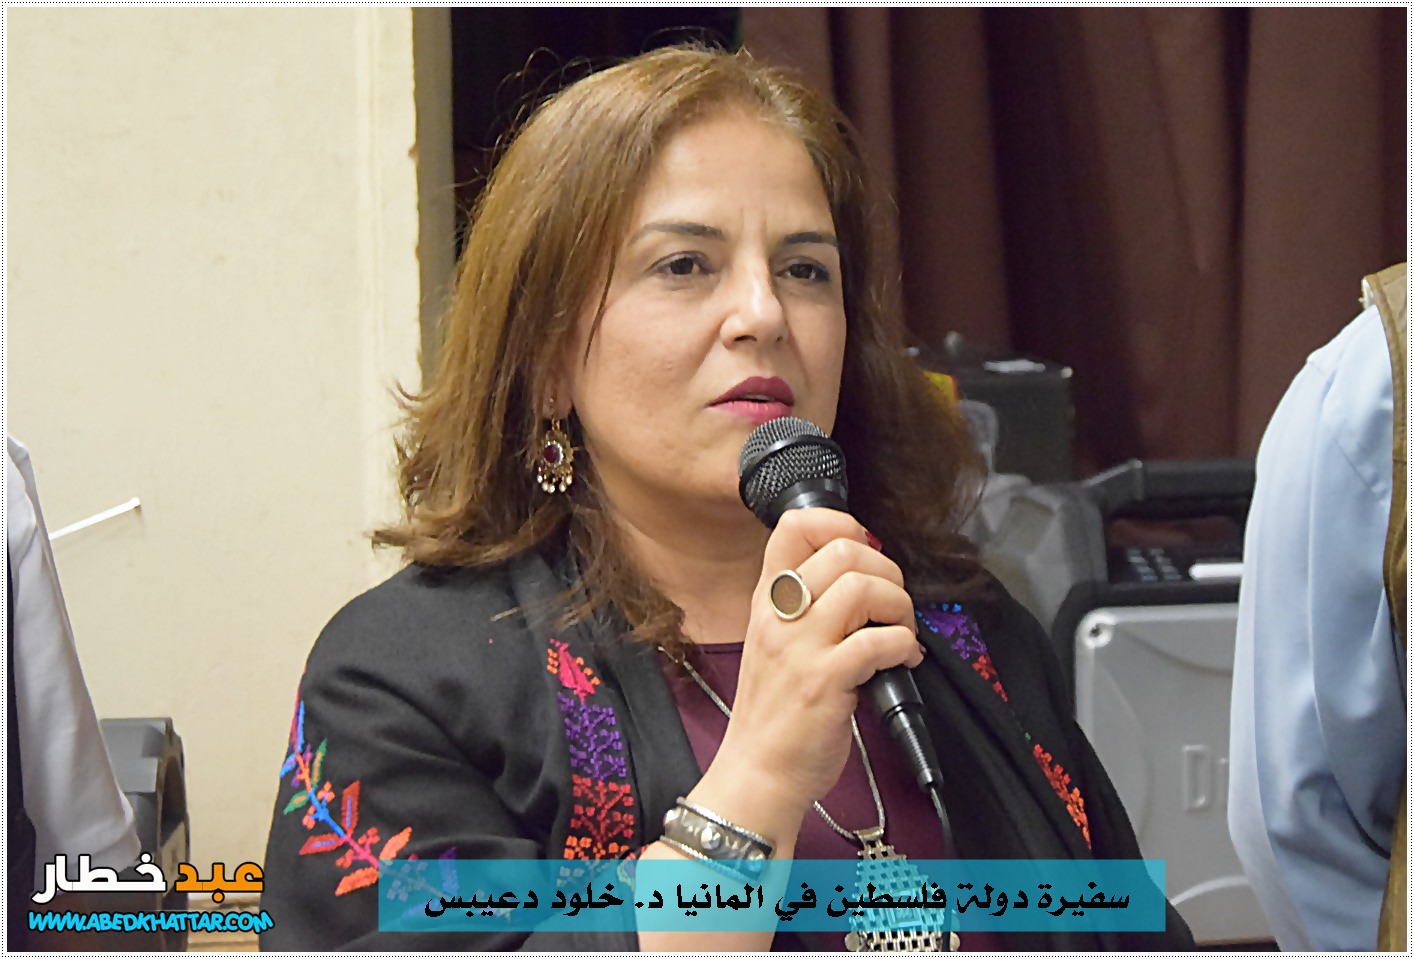 سفيرة دولة فلسطين في ألمانيا الدكتورة خلود دعيبس